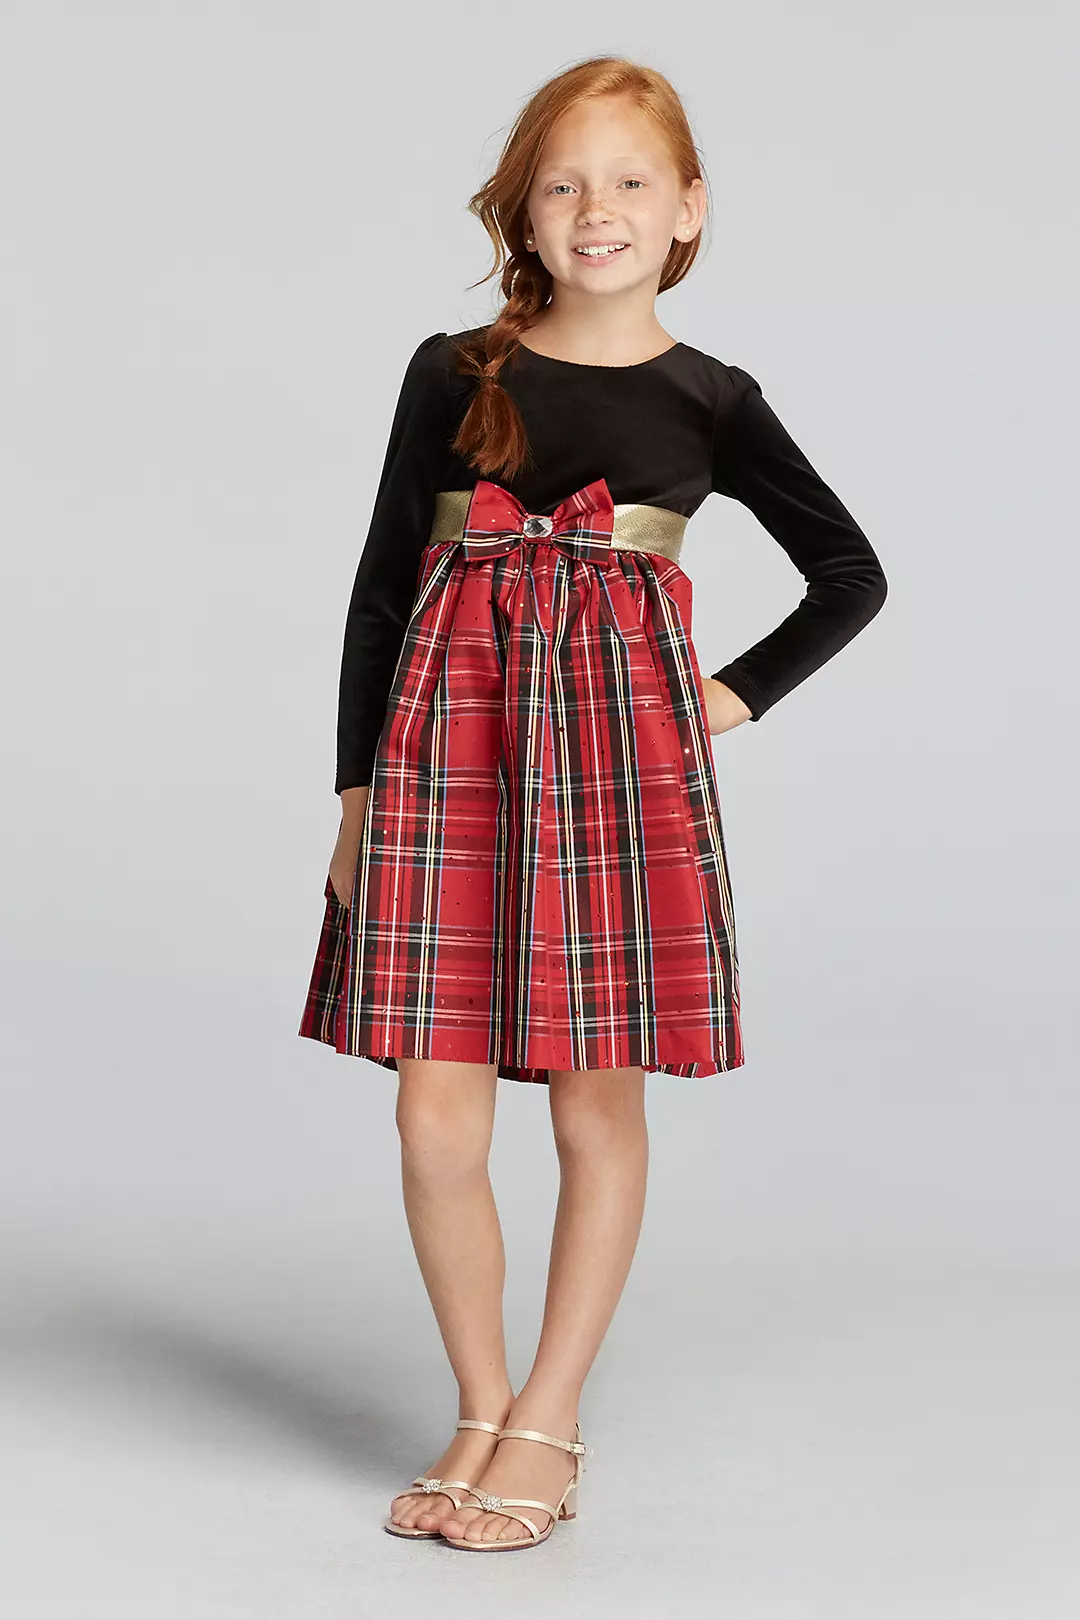 Long Sleeve Velvet Dress with Plaid Skirt Image